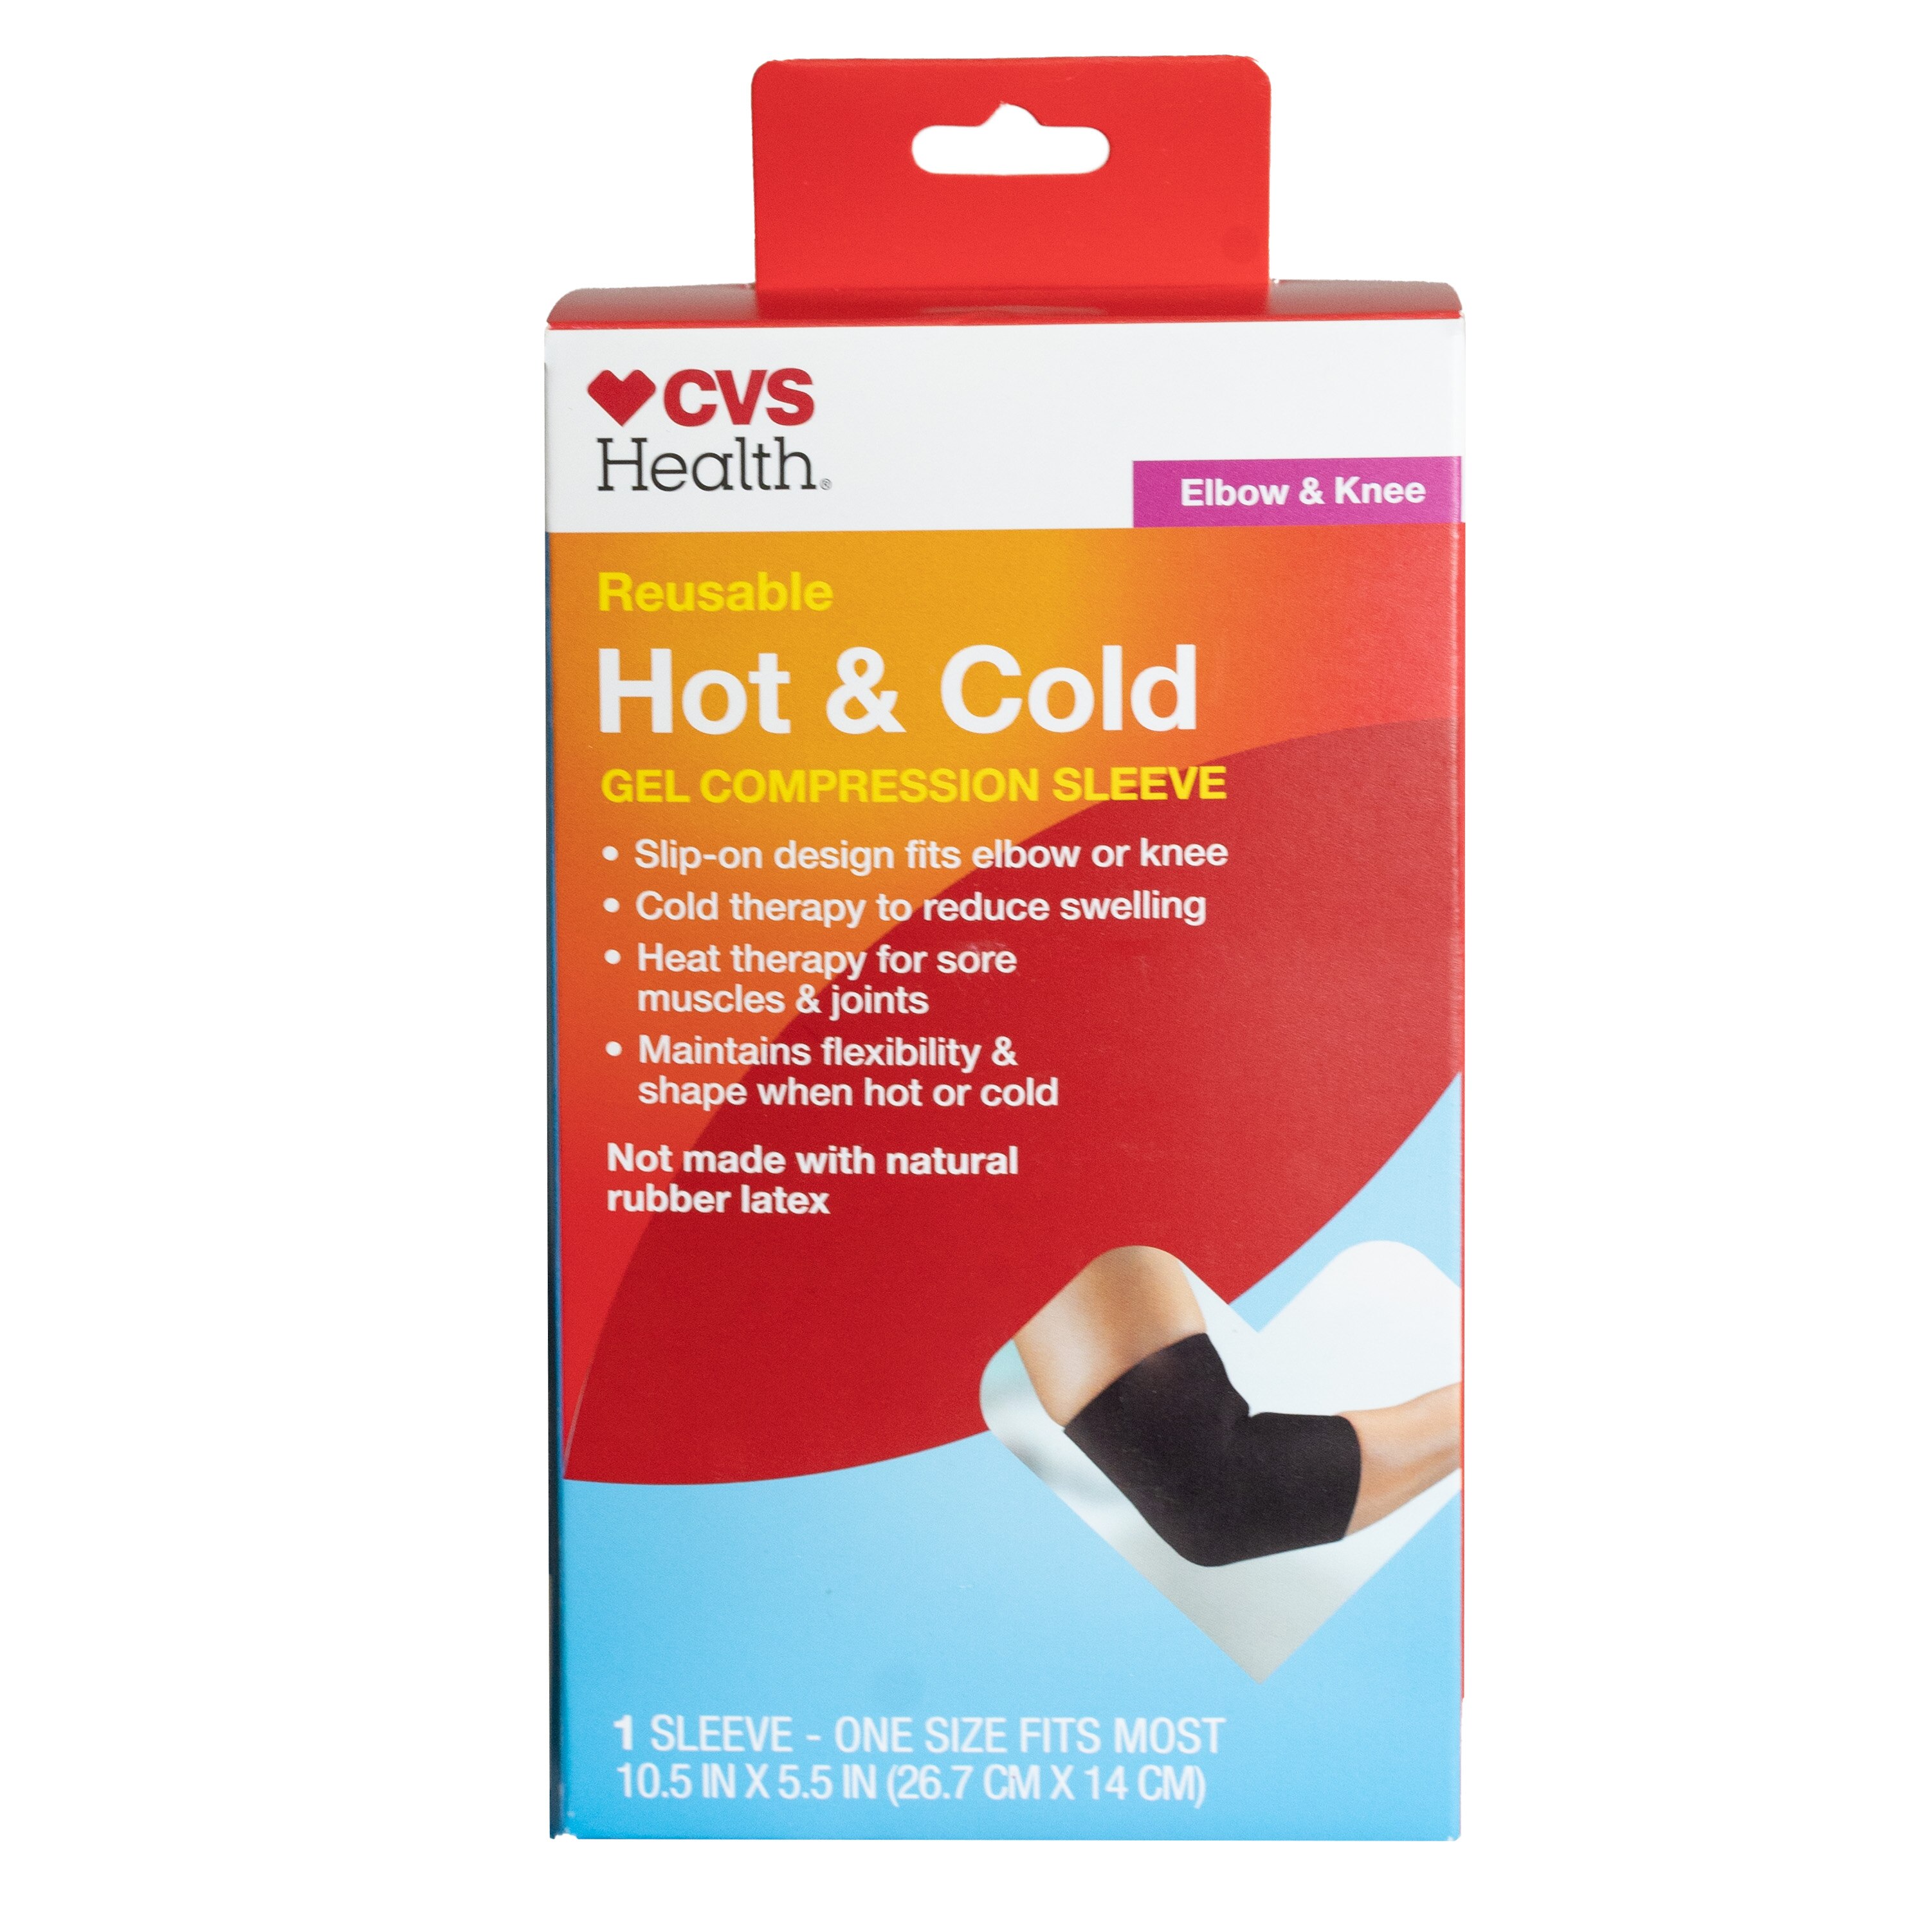 CVS Health Hot & Cold Gel Compression Sleave